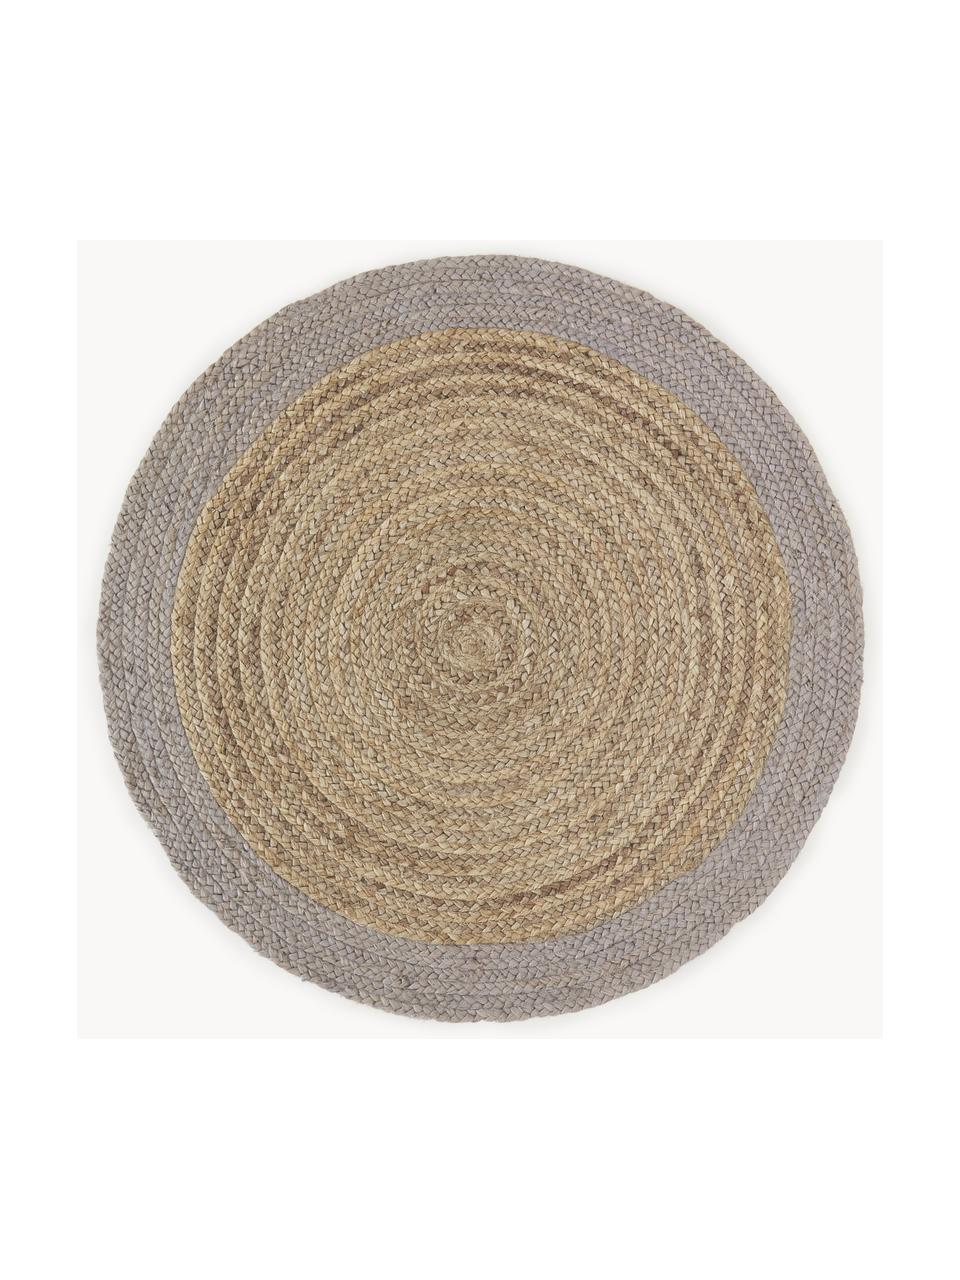 Okrúhly ručne tkaný jutový koberec so sivým okrajom Shanta, 100 % juta

Pretože jutové koberce sú drsné, sú menej vhodné na priamy kontakt s pokožkou, Béžová, sivá, Ø 140 cm (veľkosť M)